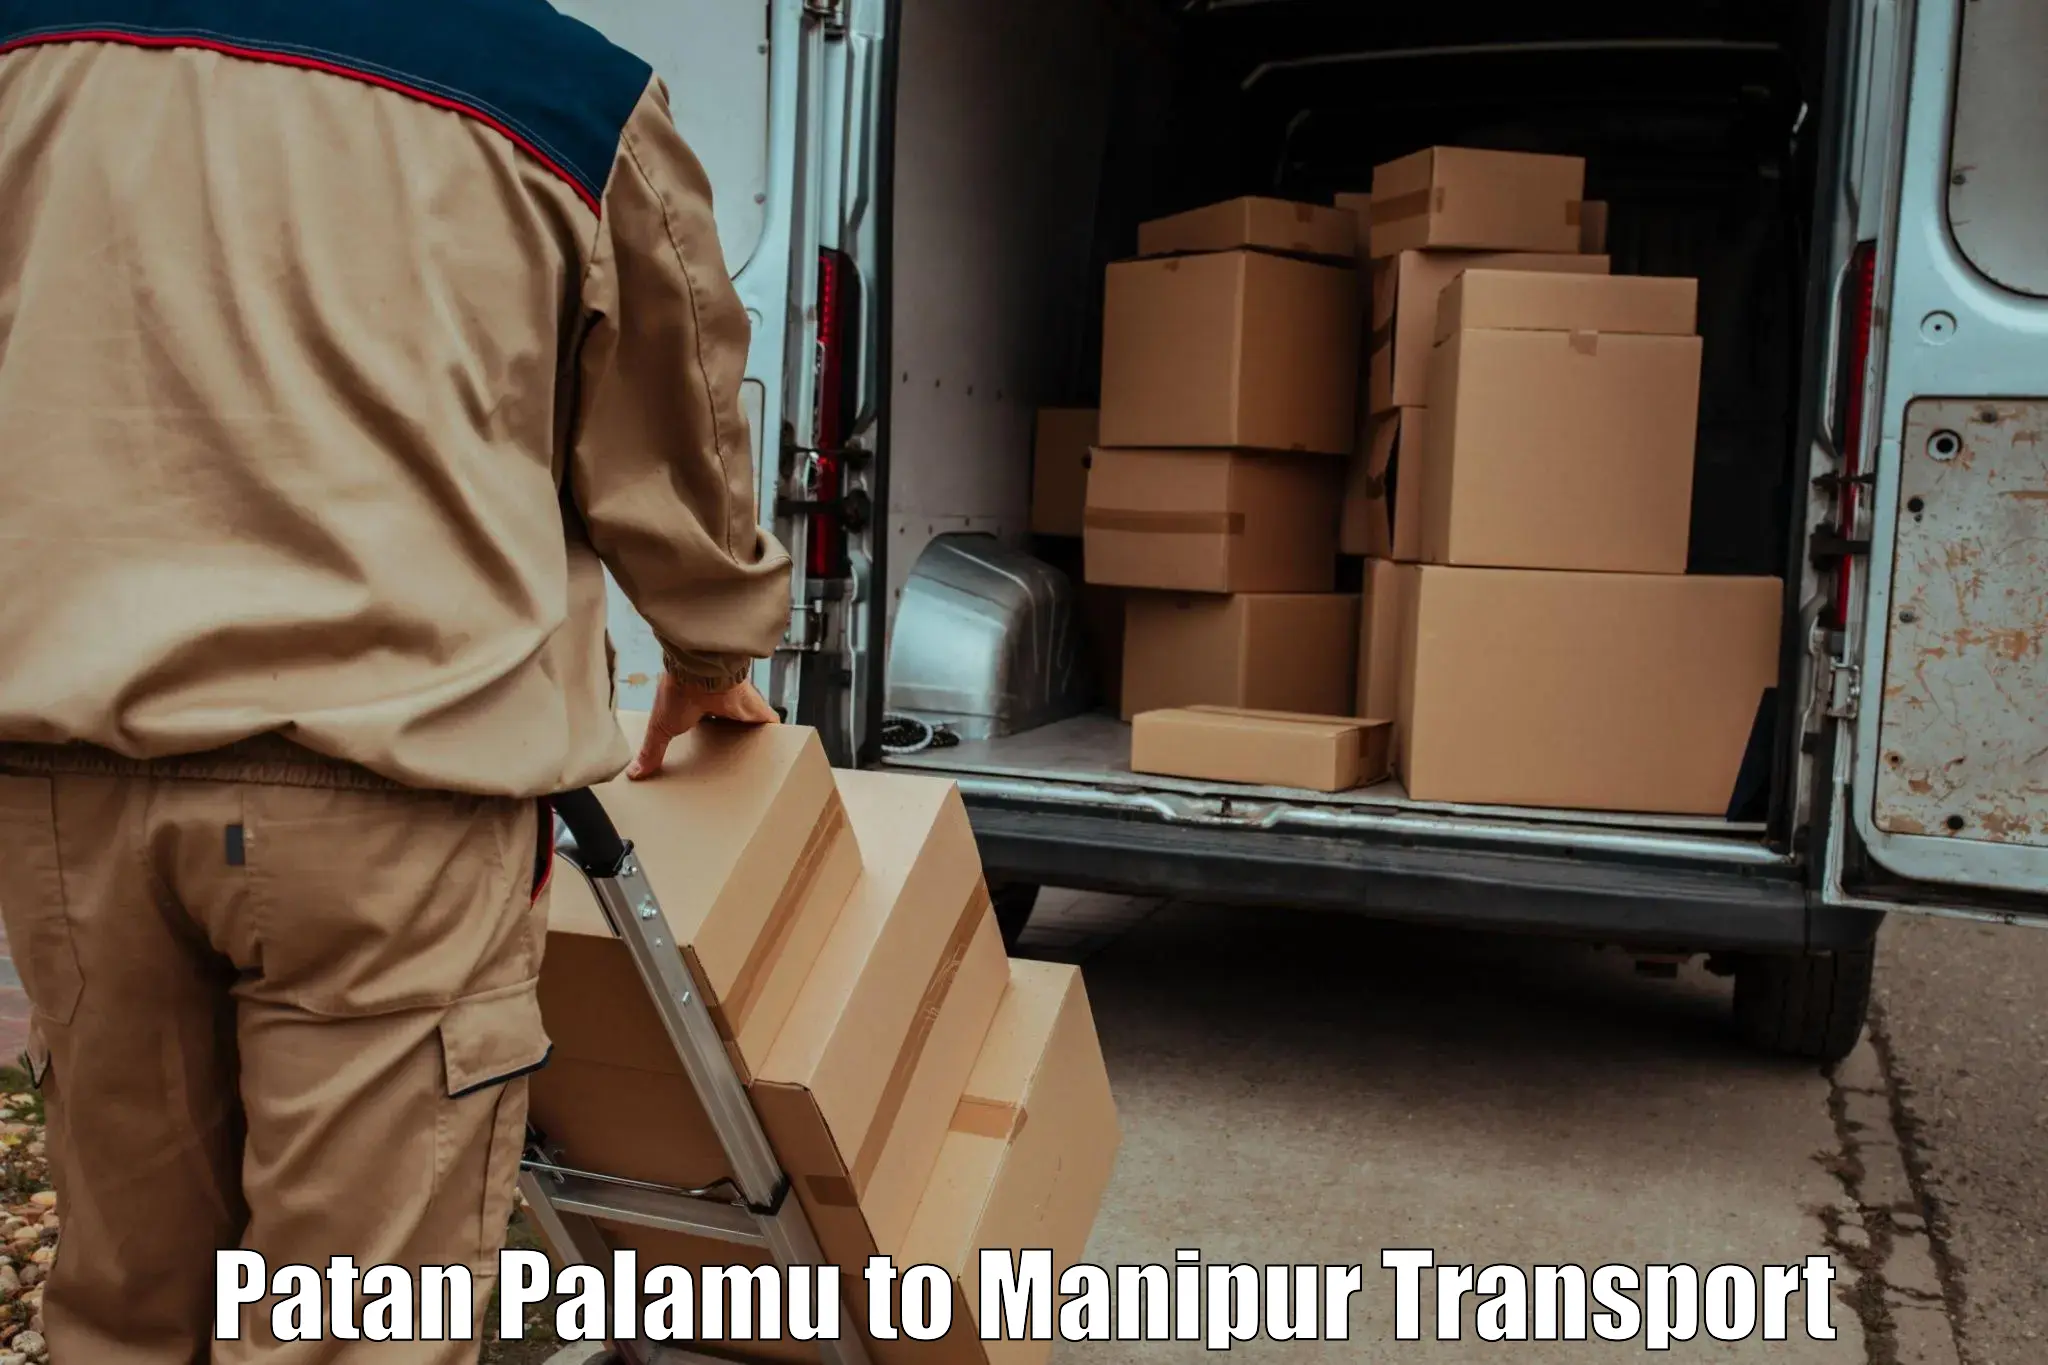 Furniture transport service Patan Palamu to Imphal